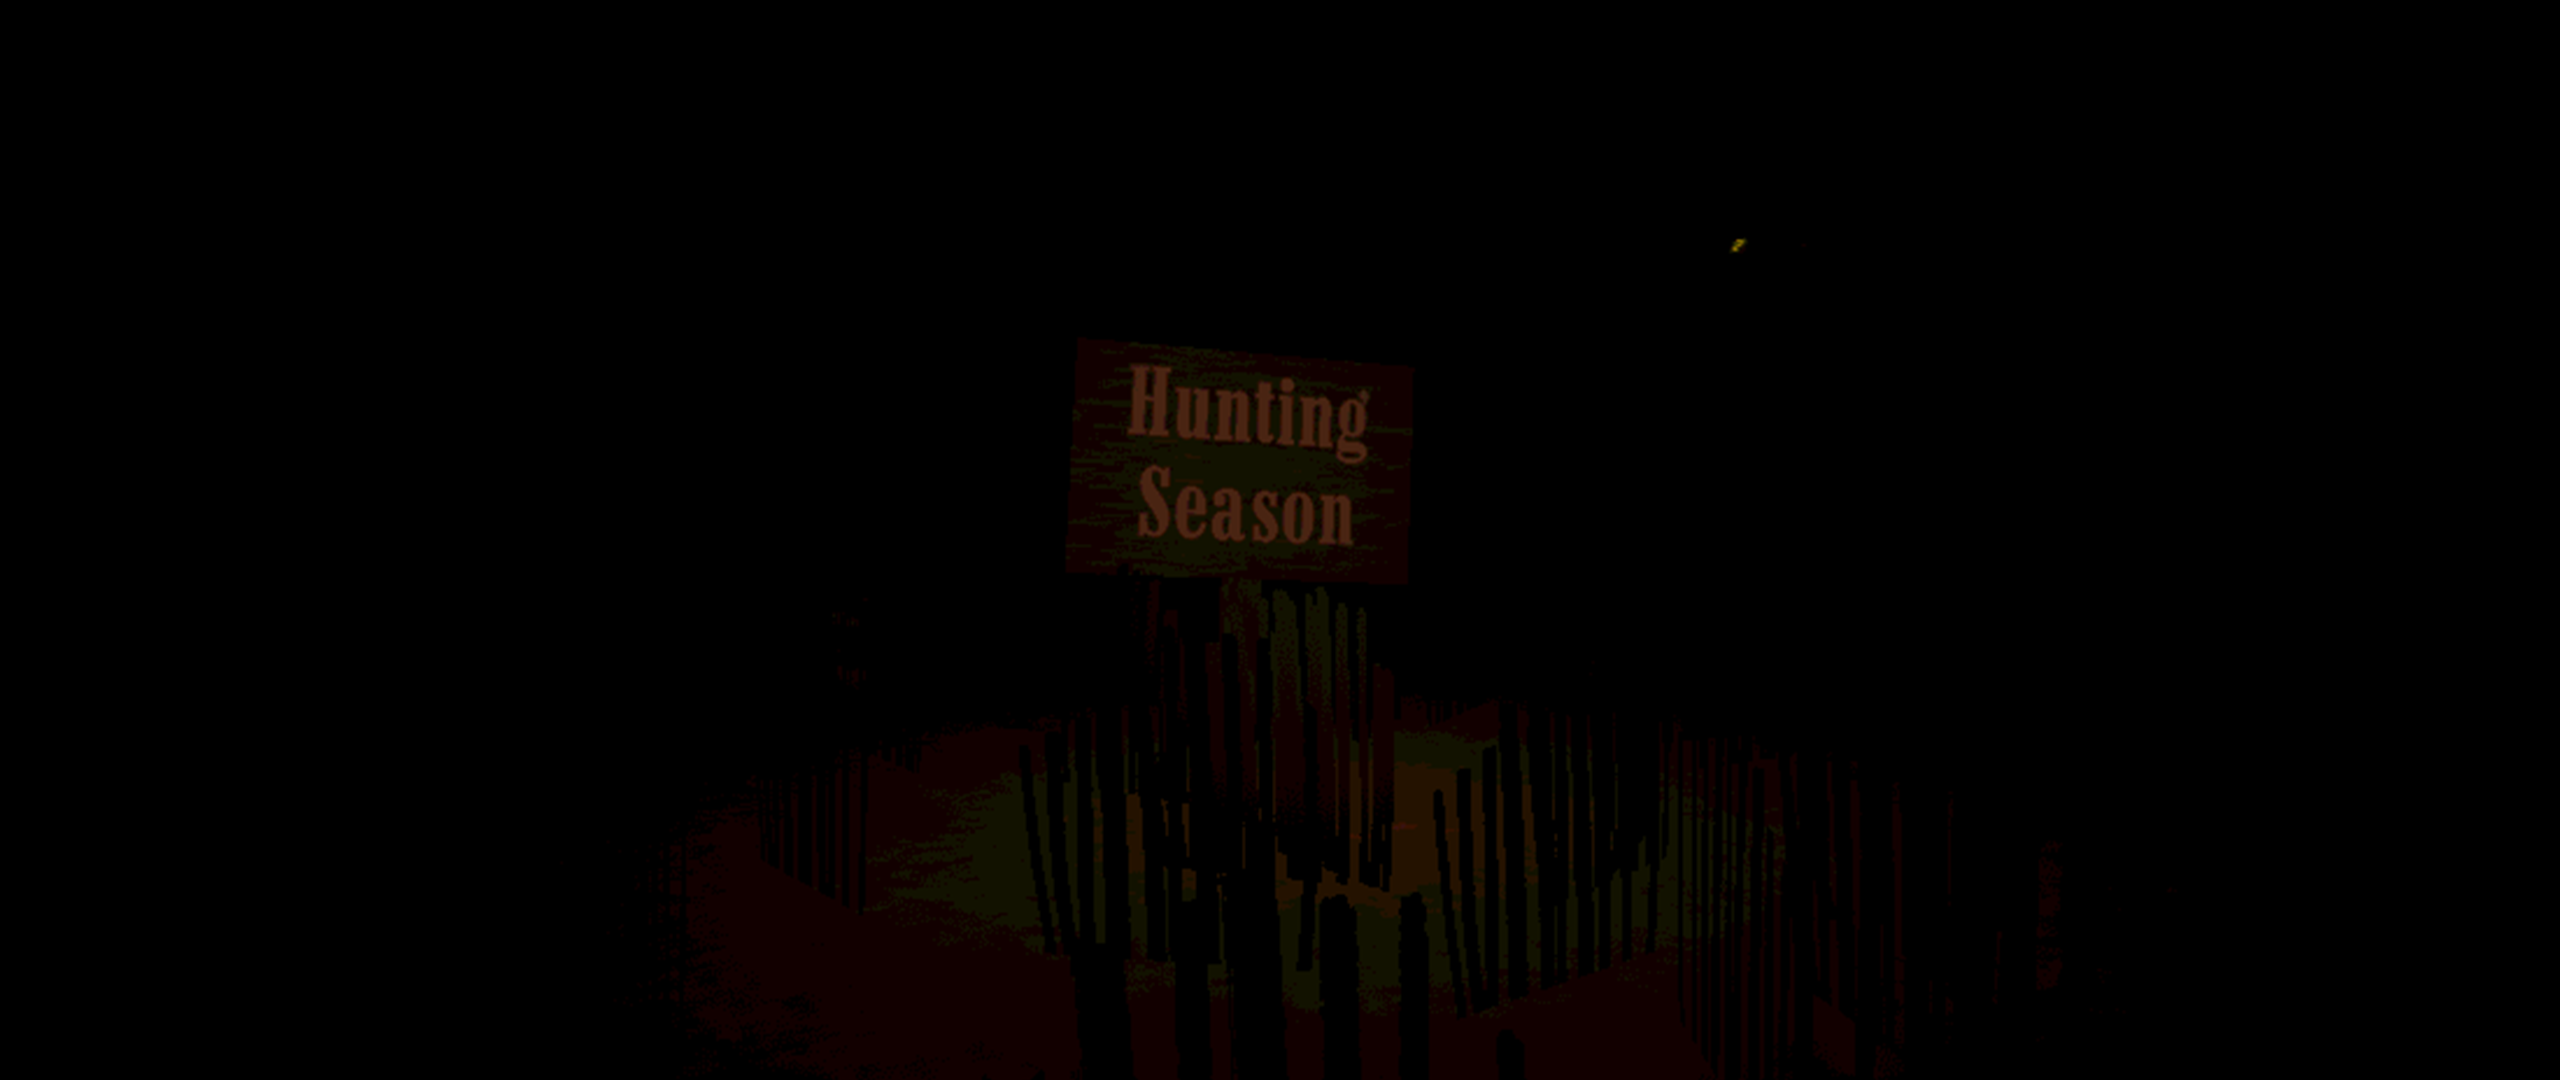 Hunting Season [DEMO V2]